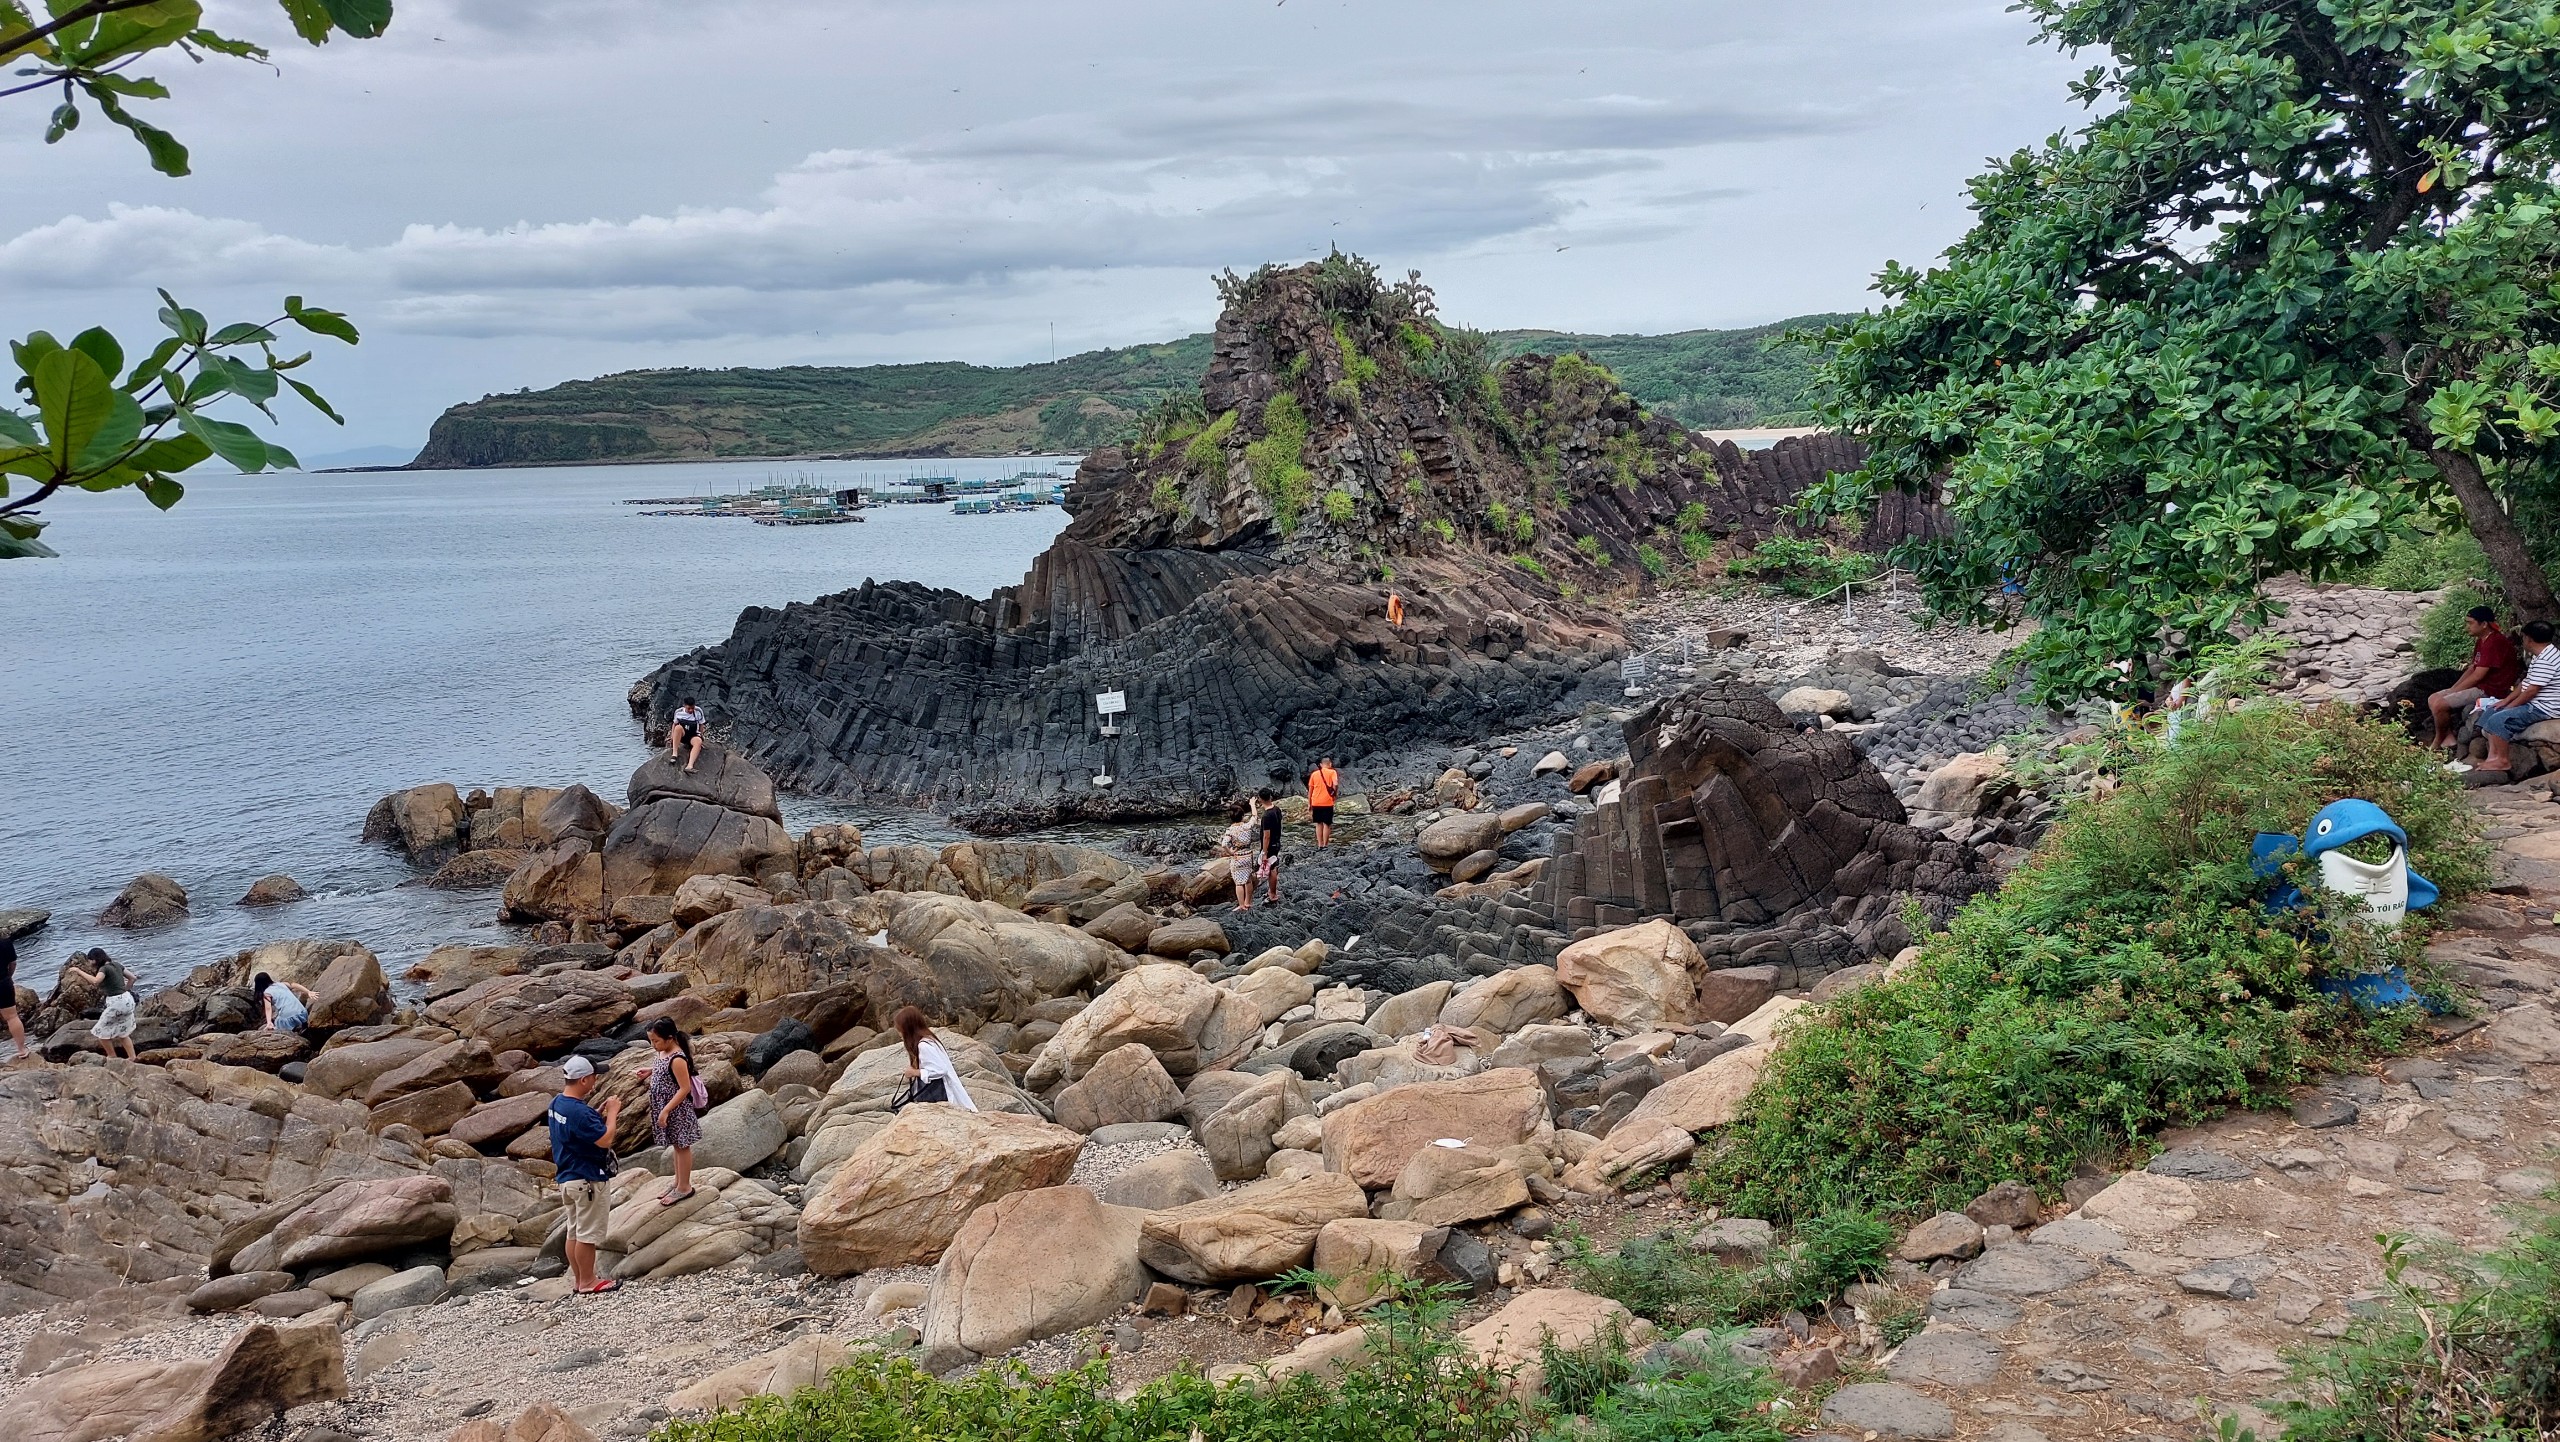 Mùa hè - Du khách chen nhau chụp hình bãi đá cổ triệu năm - 7